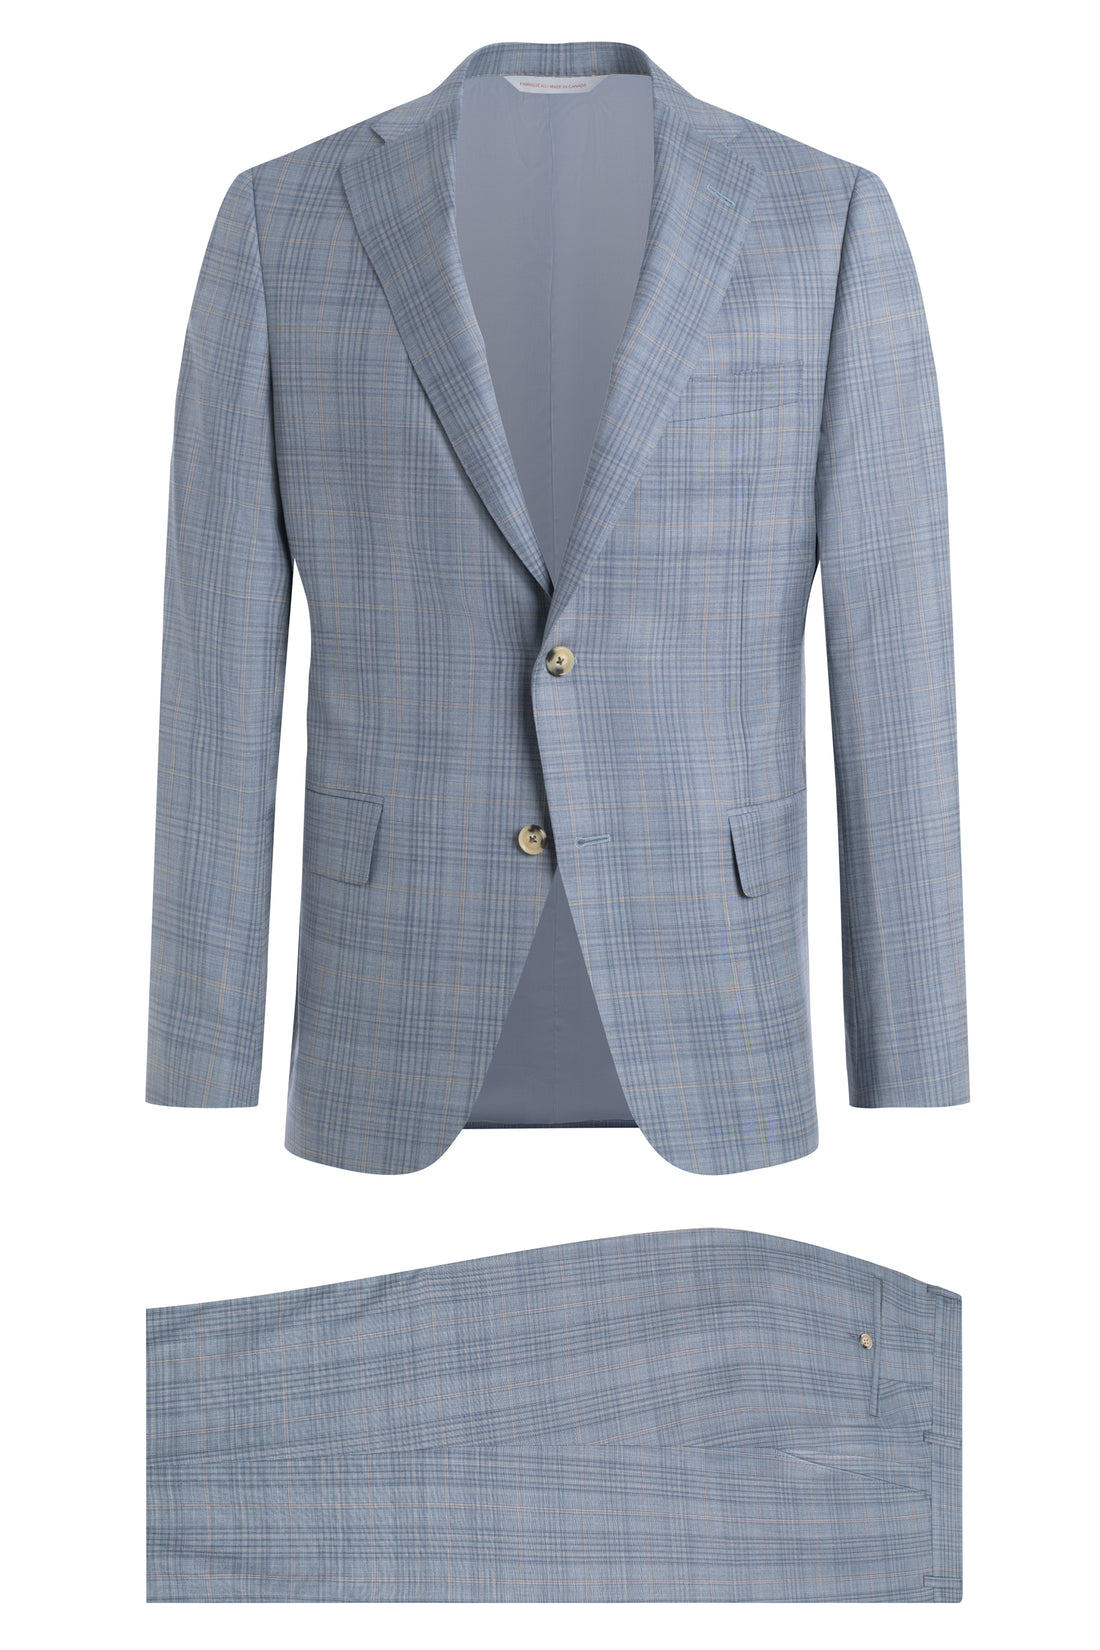 Light Blue and Tan 130's Plaid Suit